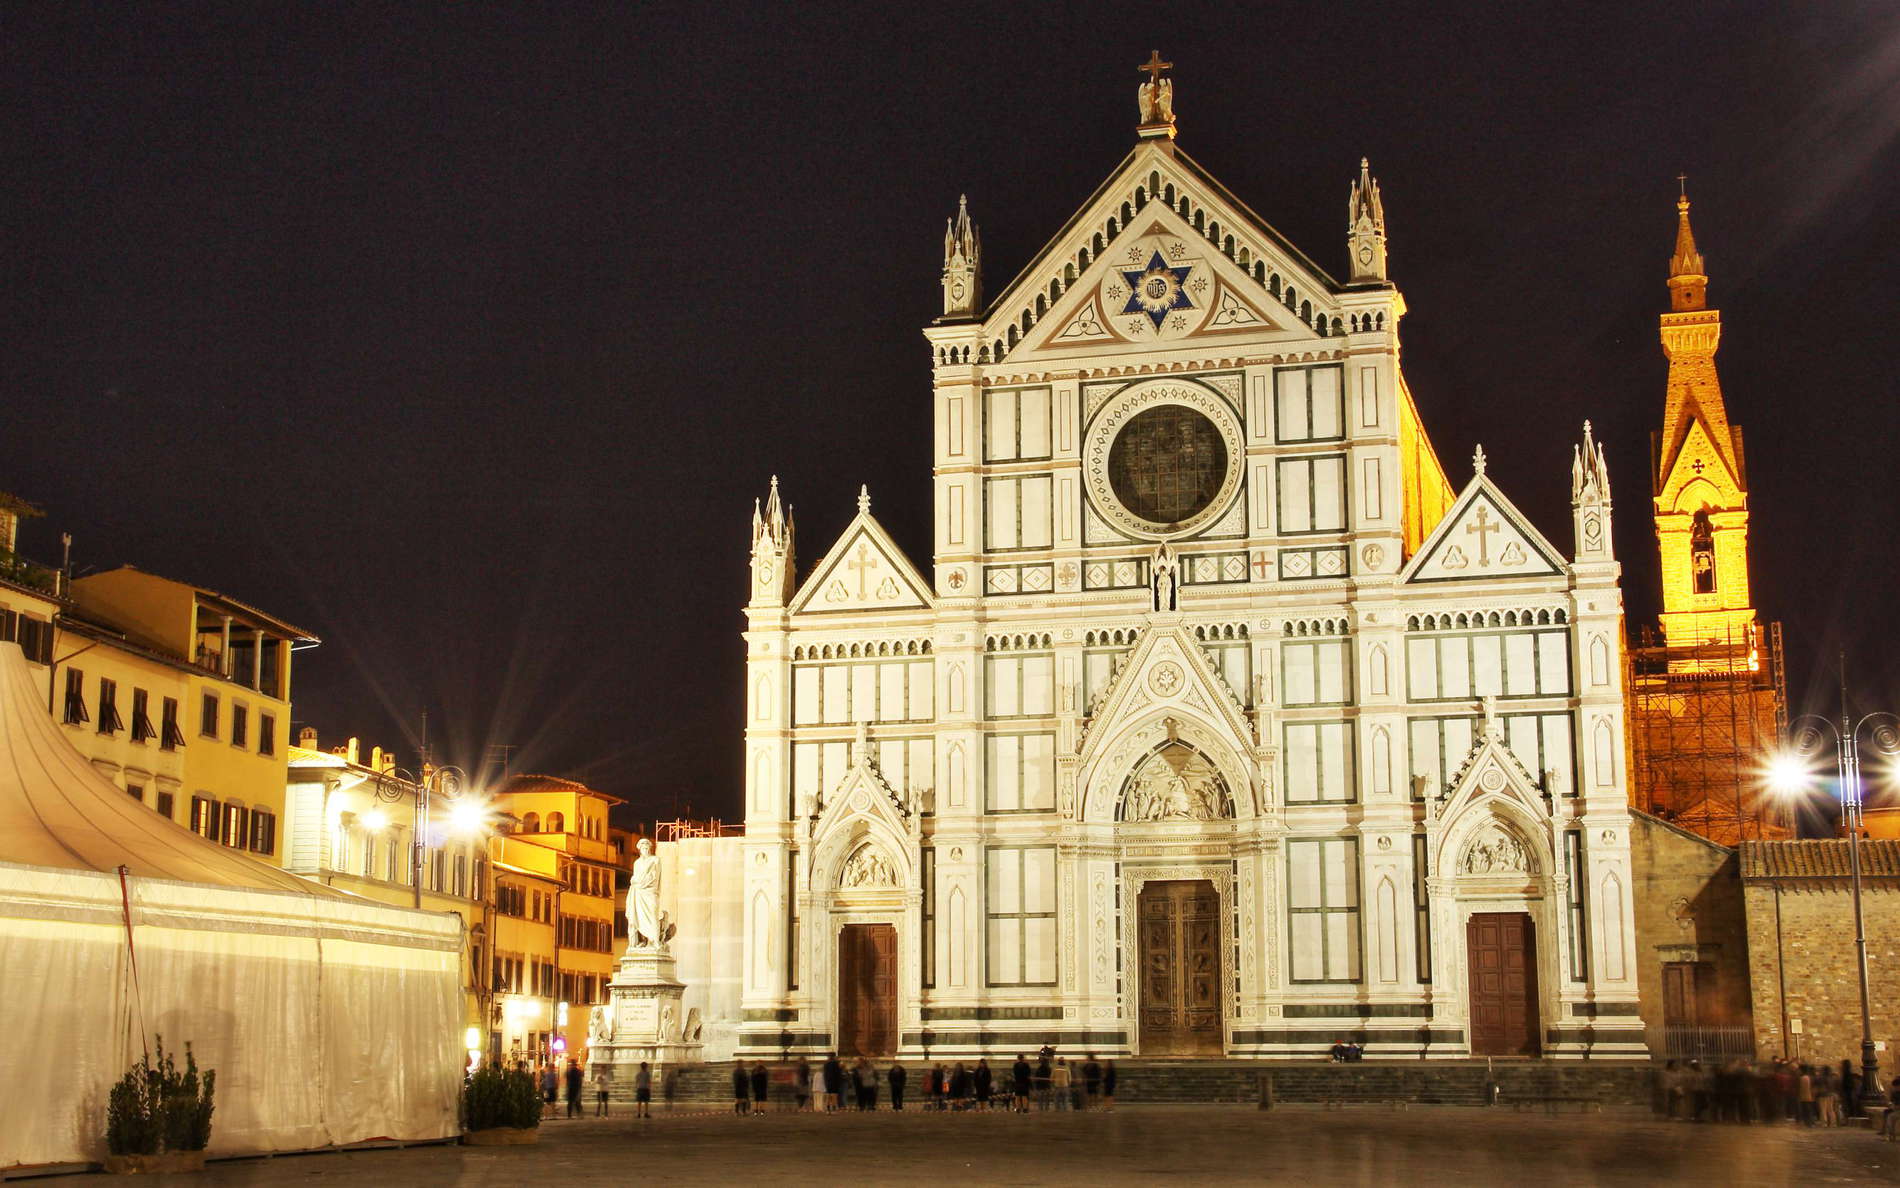 Firenze | Basilica di Santa Croce